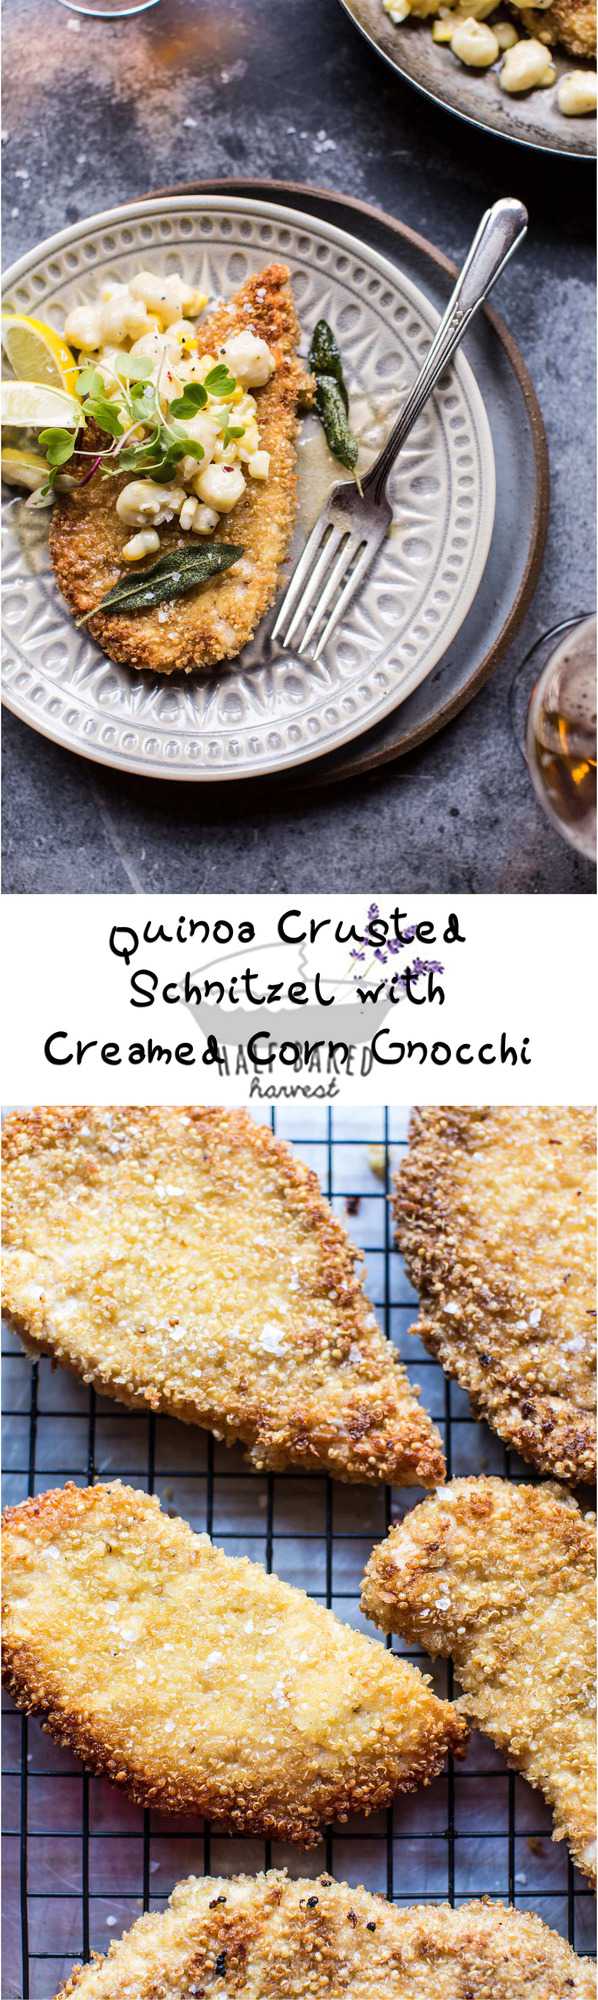 Quinoa Crusted Schnitzel with Creamed Corn Gnocchi | halfbakedharvest.com @hbharvest